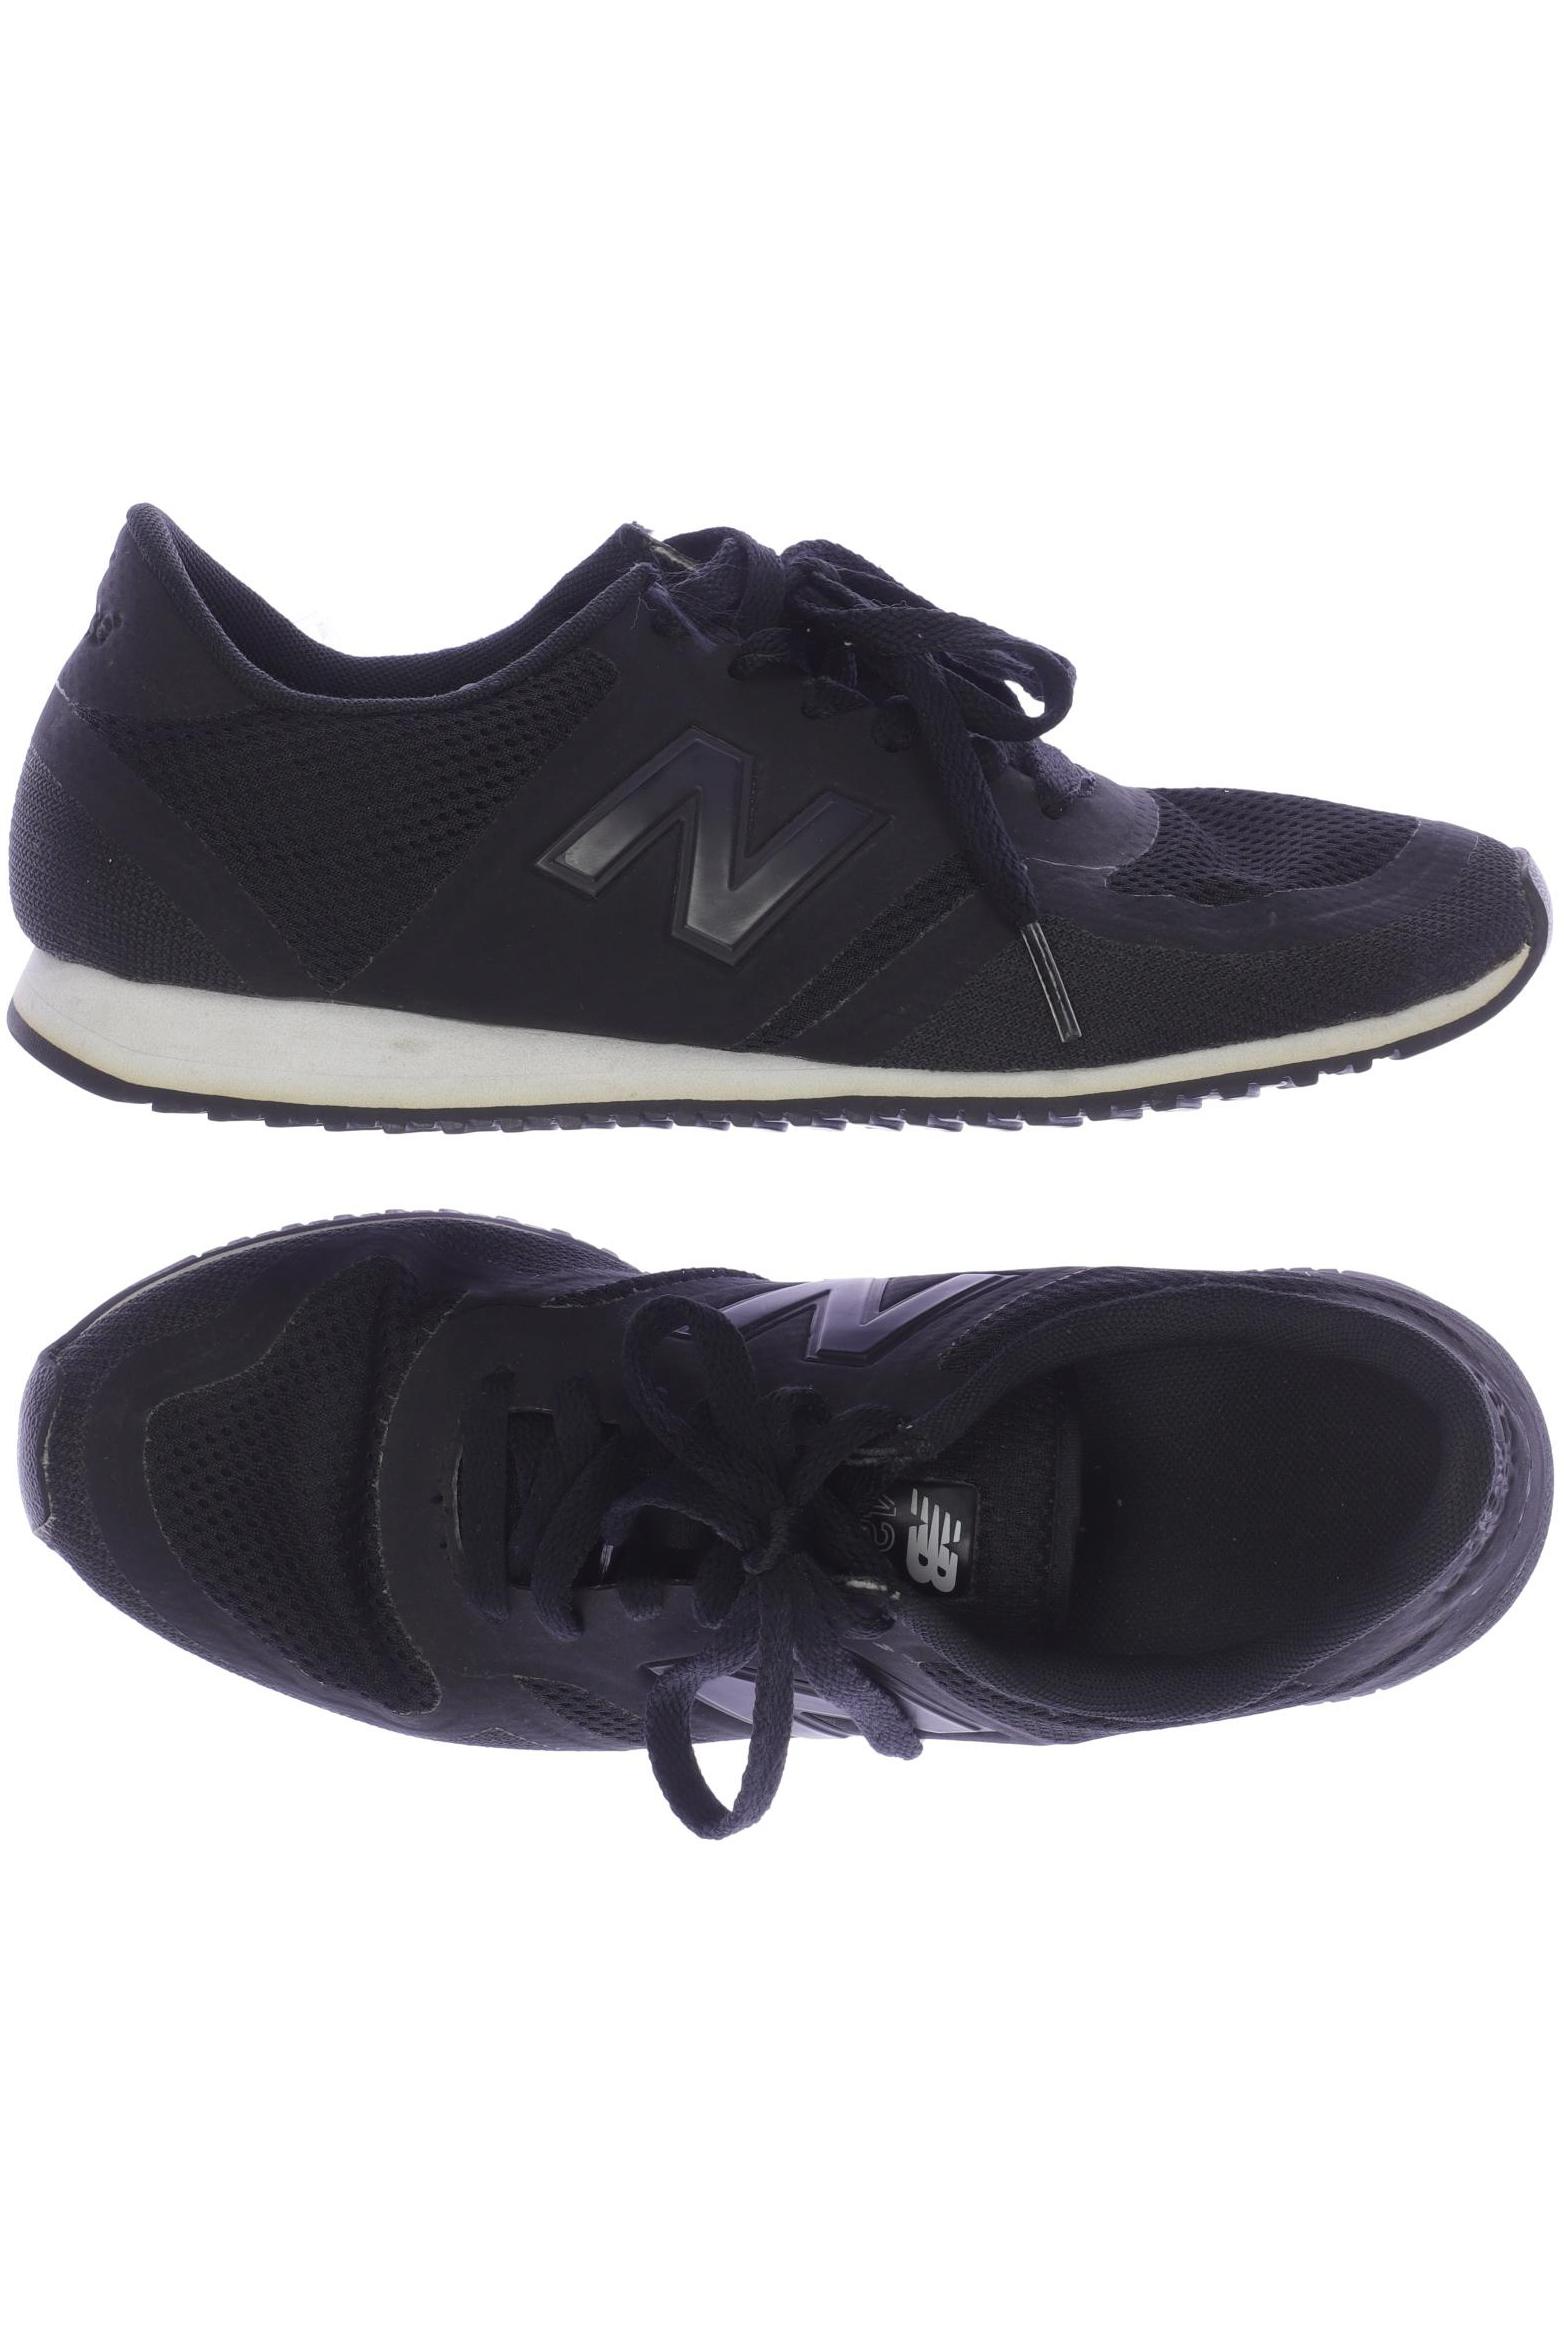 New Balance Damen Sneakers, schwarz von New Balance